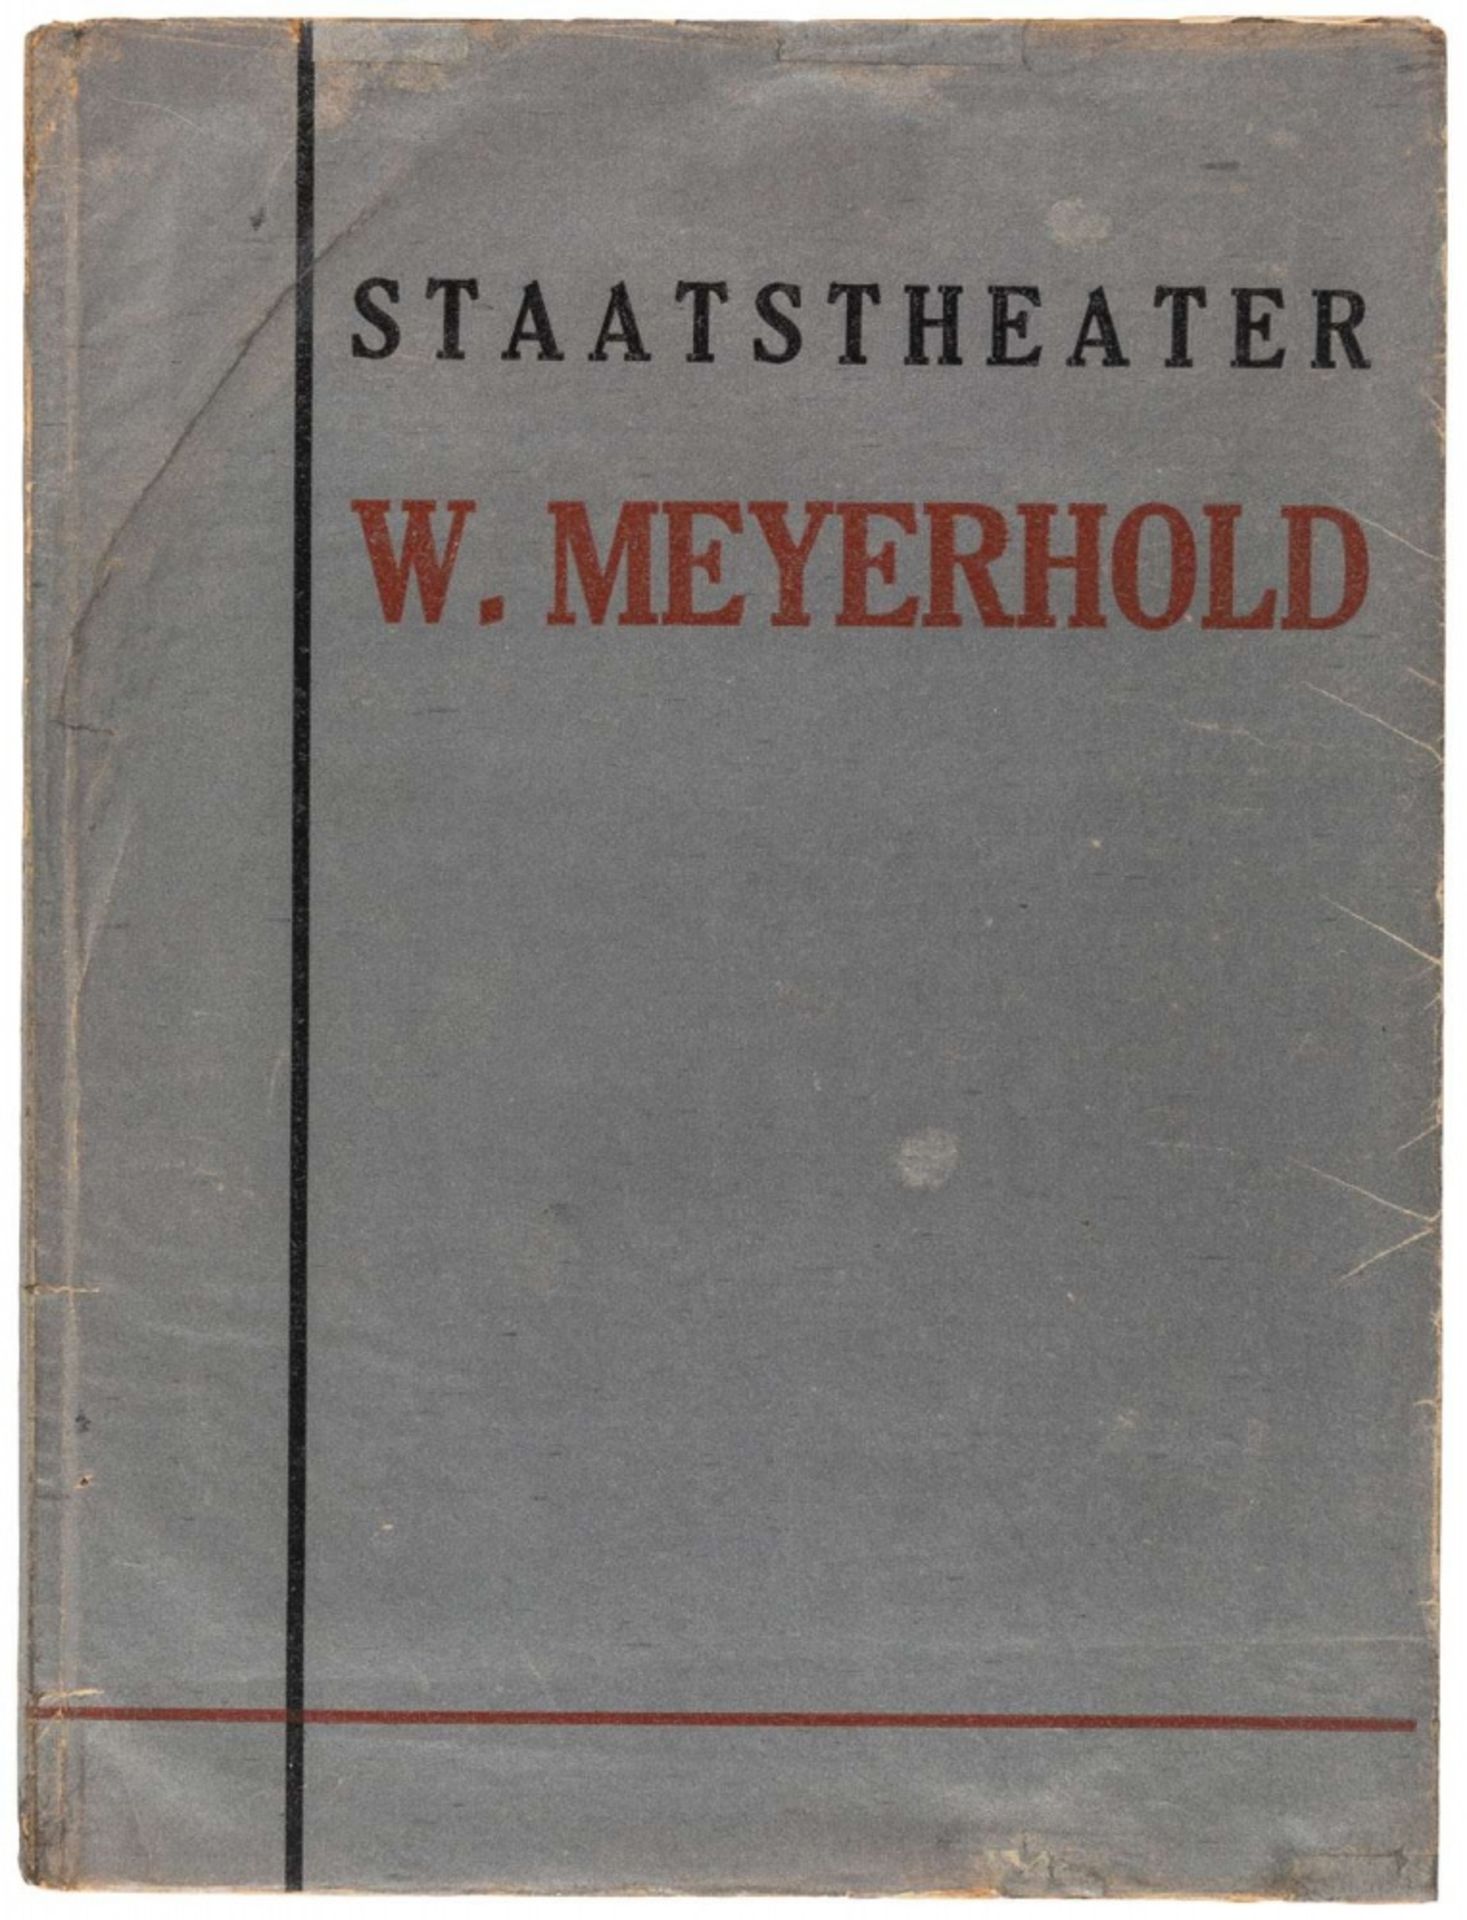 [KLUTSIS] STAATSTHEATER W. MEYERHOLD, 1930